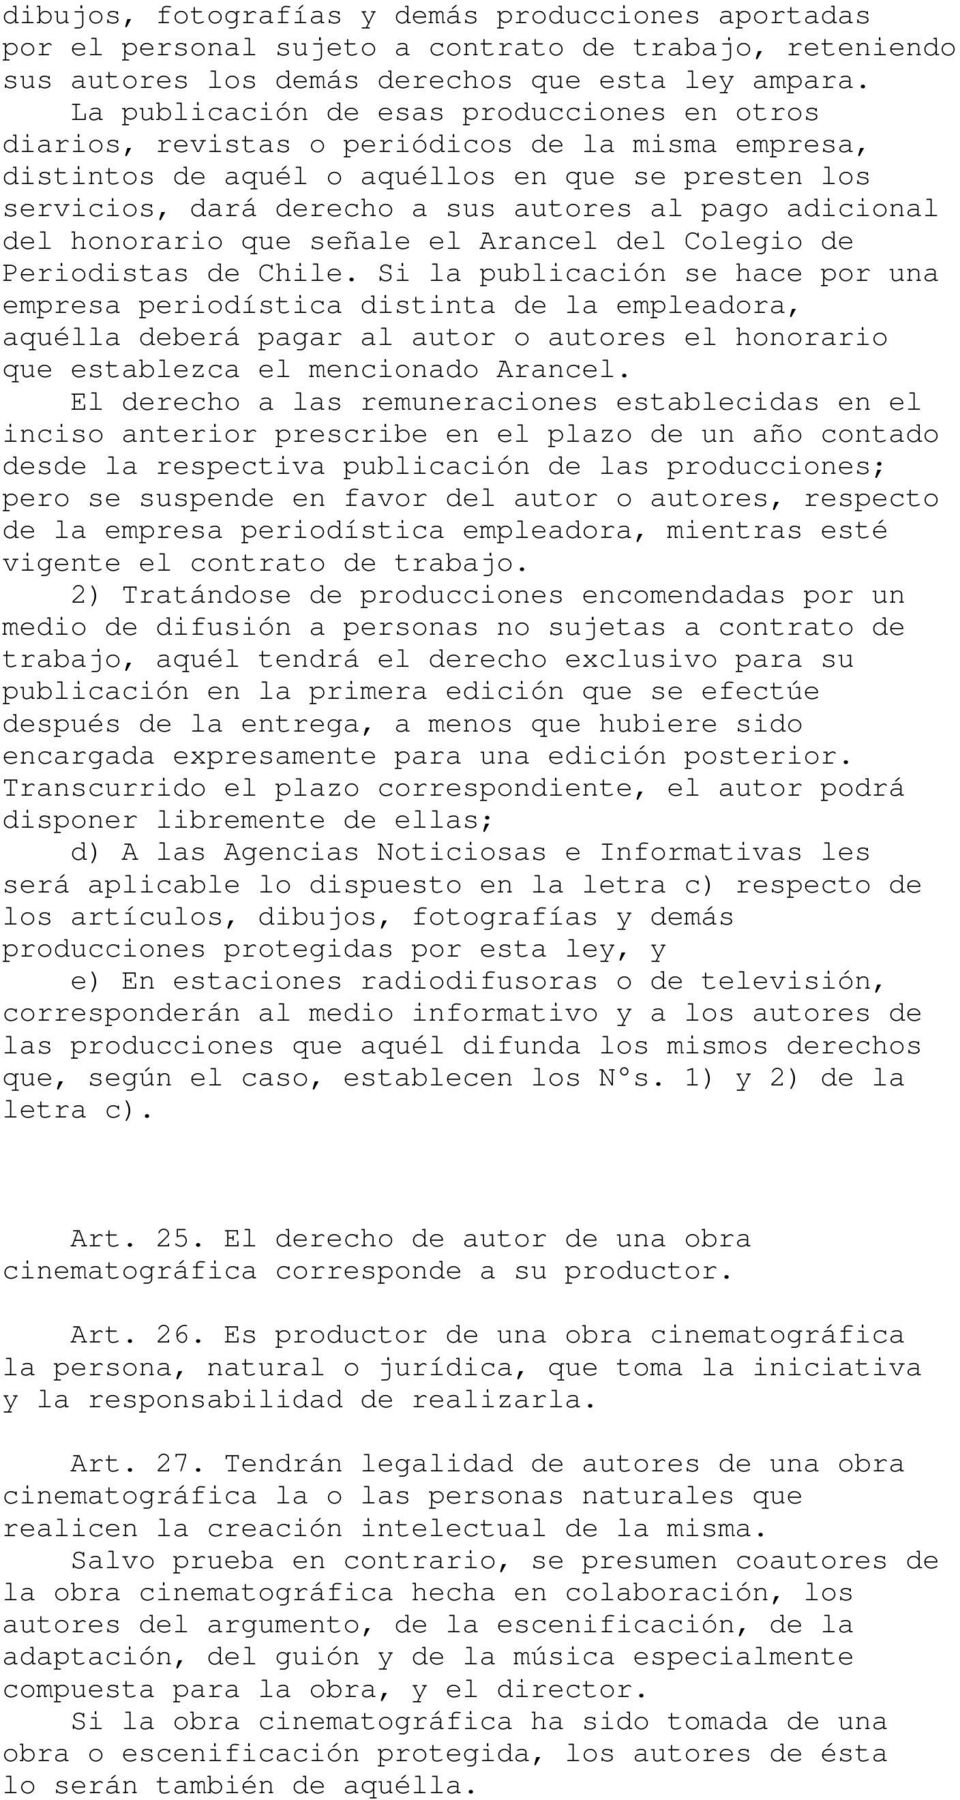 adicional del honorario que señale el Arancel del Colegio de Periodistas de Chile.